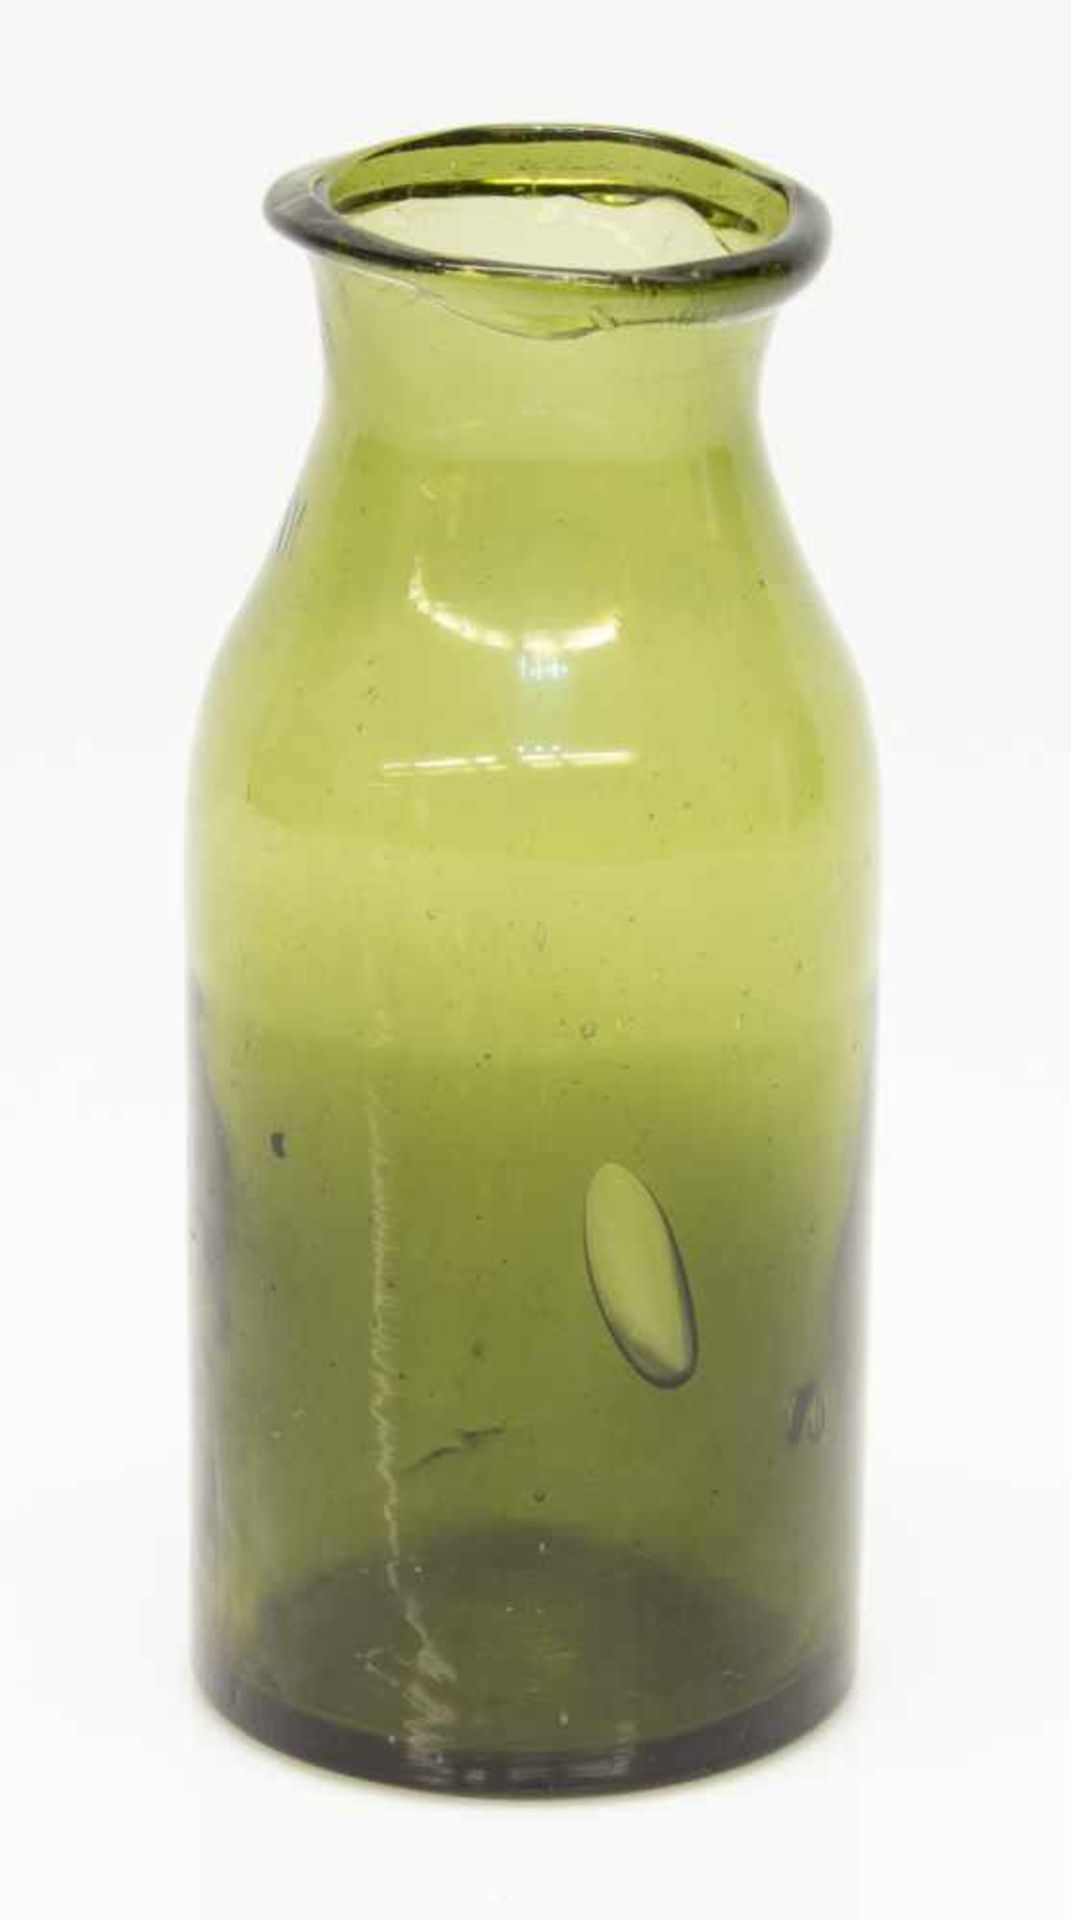 VorratsgefäßMecklenburger Waldglas Ende 19. Jh., grün gefärbtes Glas, eingezogene Schulter,